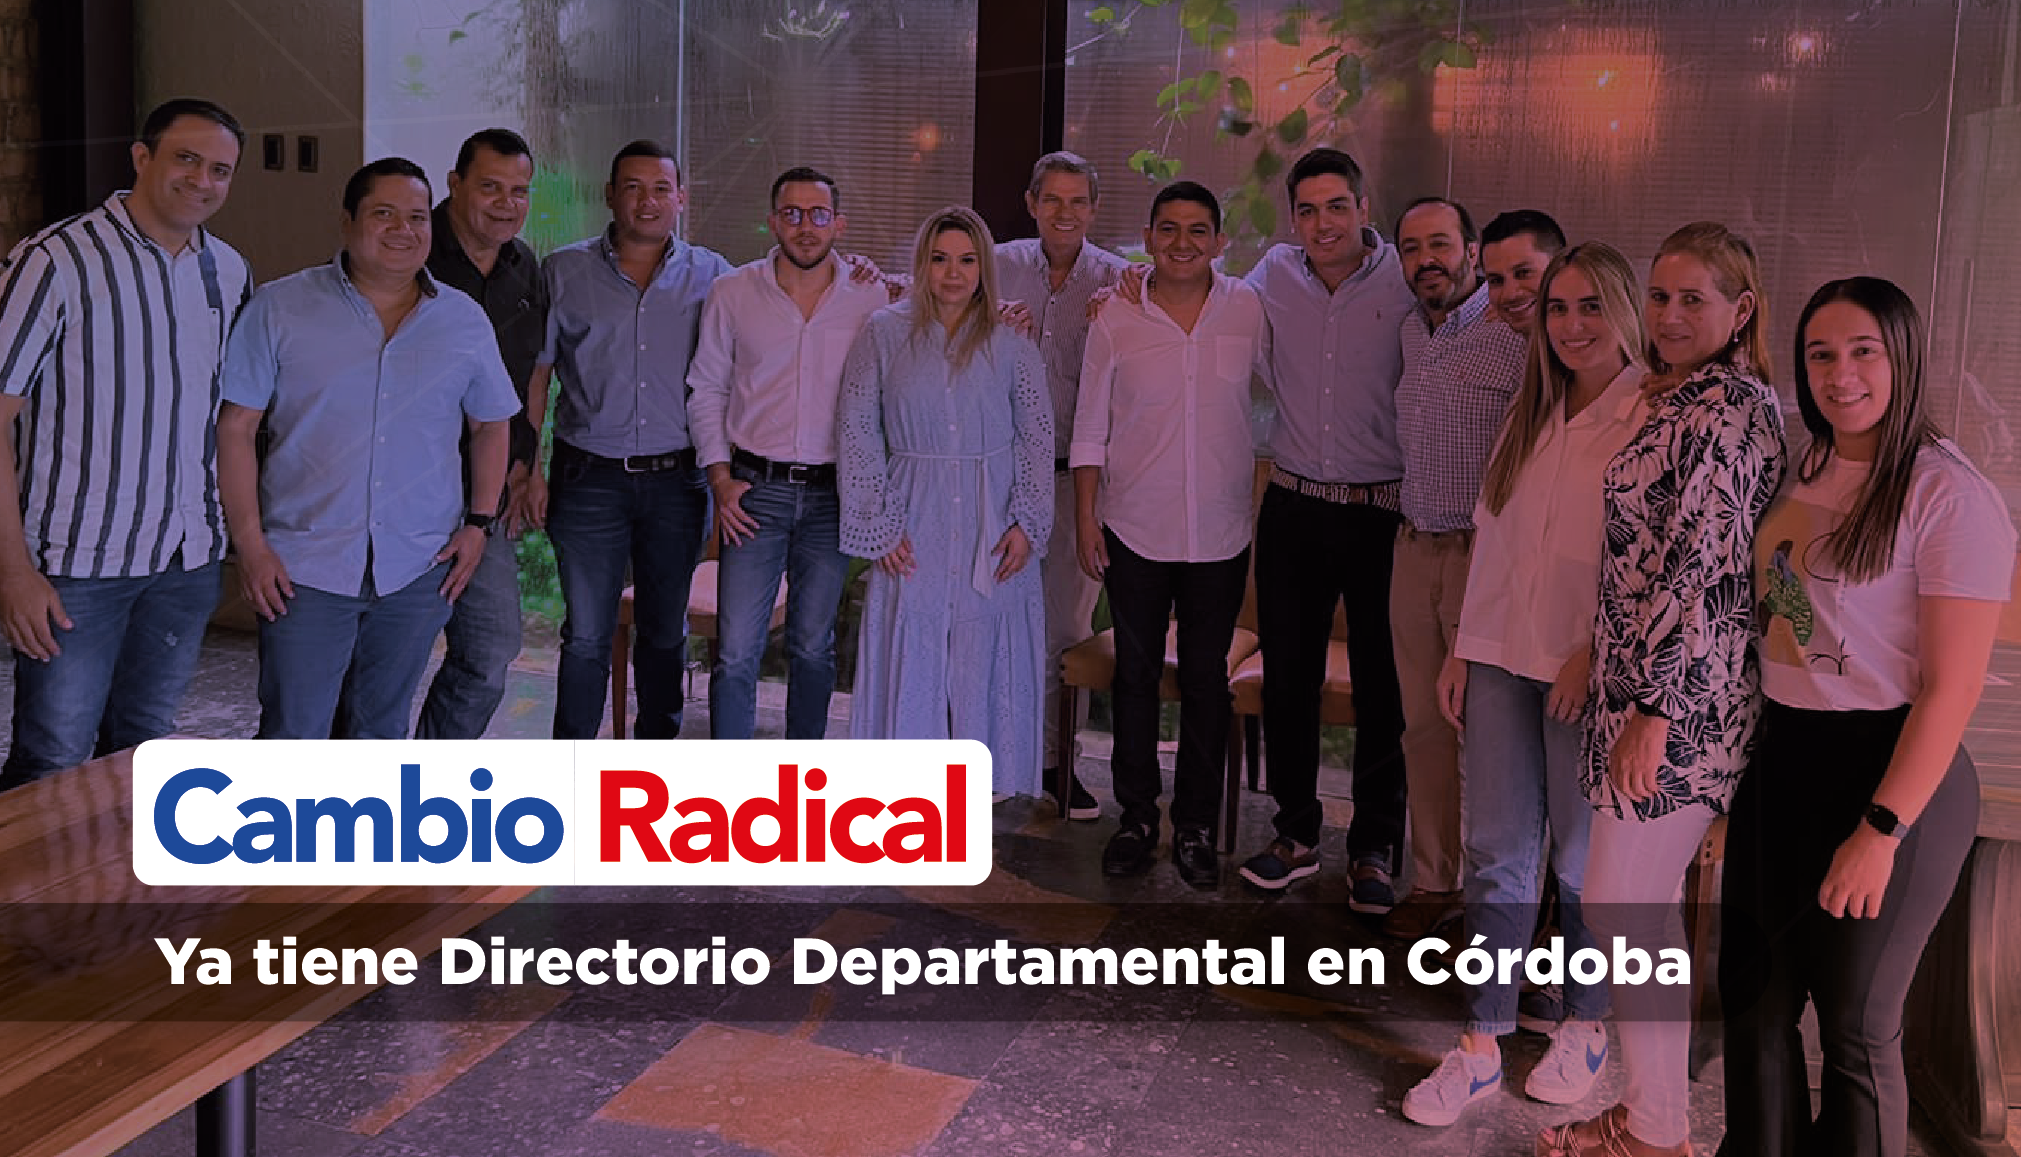 Cambio Radical ya tiene Directorio Departamental en Córdoba